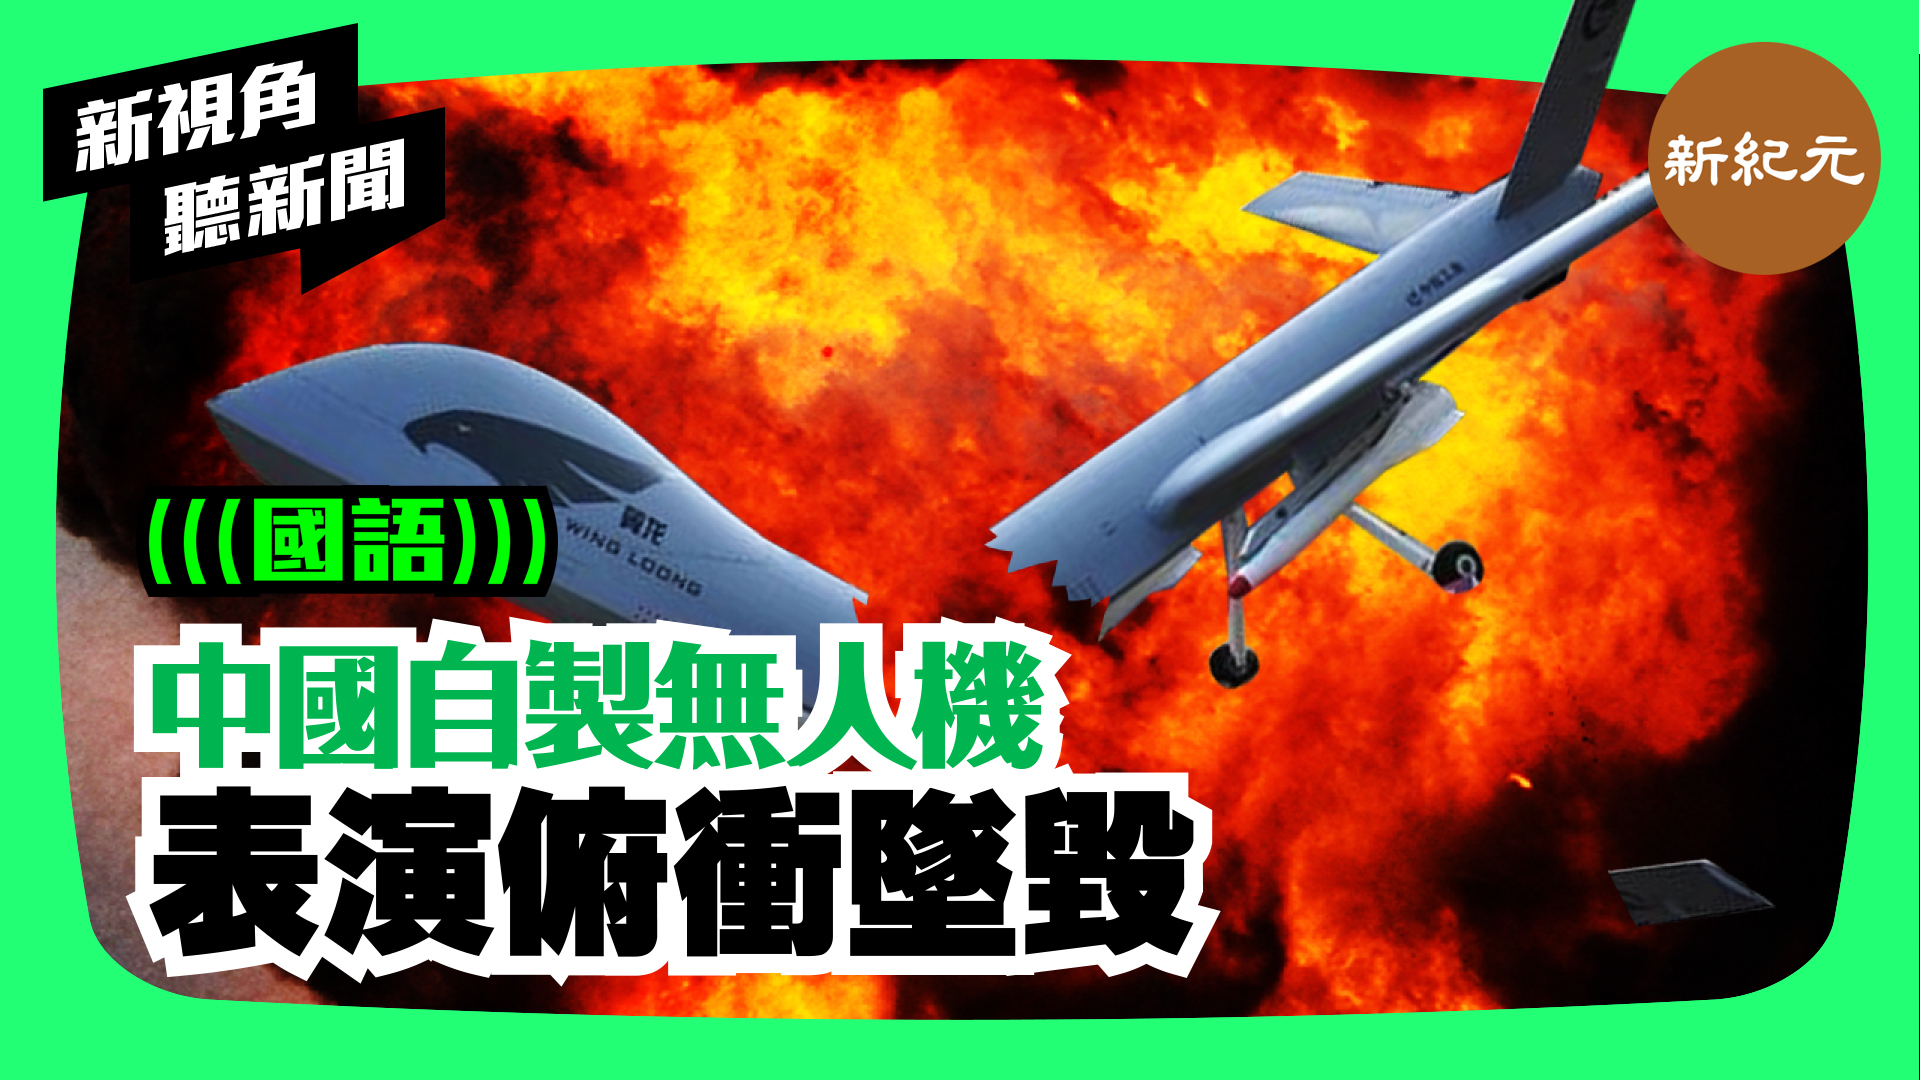 【新視角聽新聞 #47】中國自製無人機.  表演俯衝墜毀